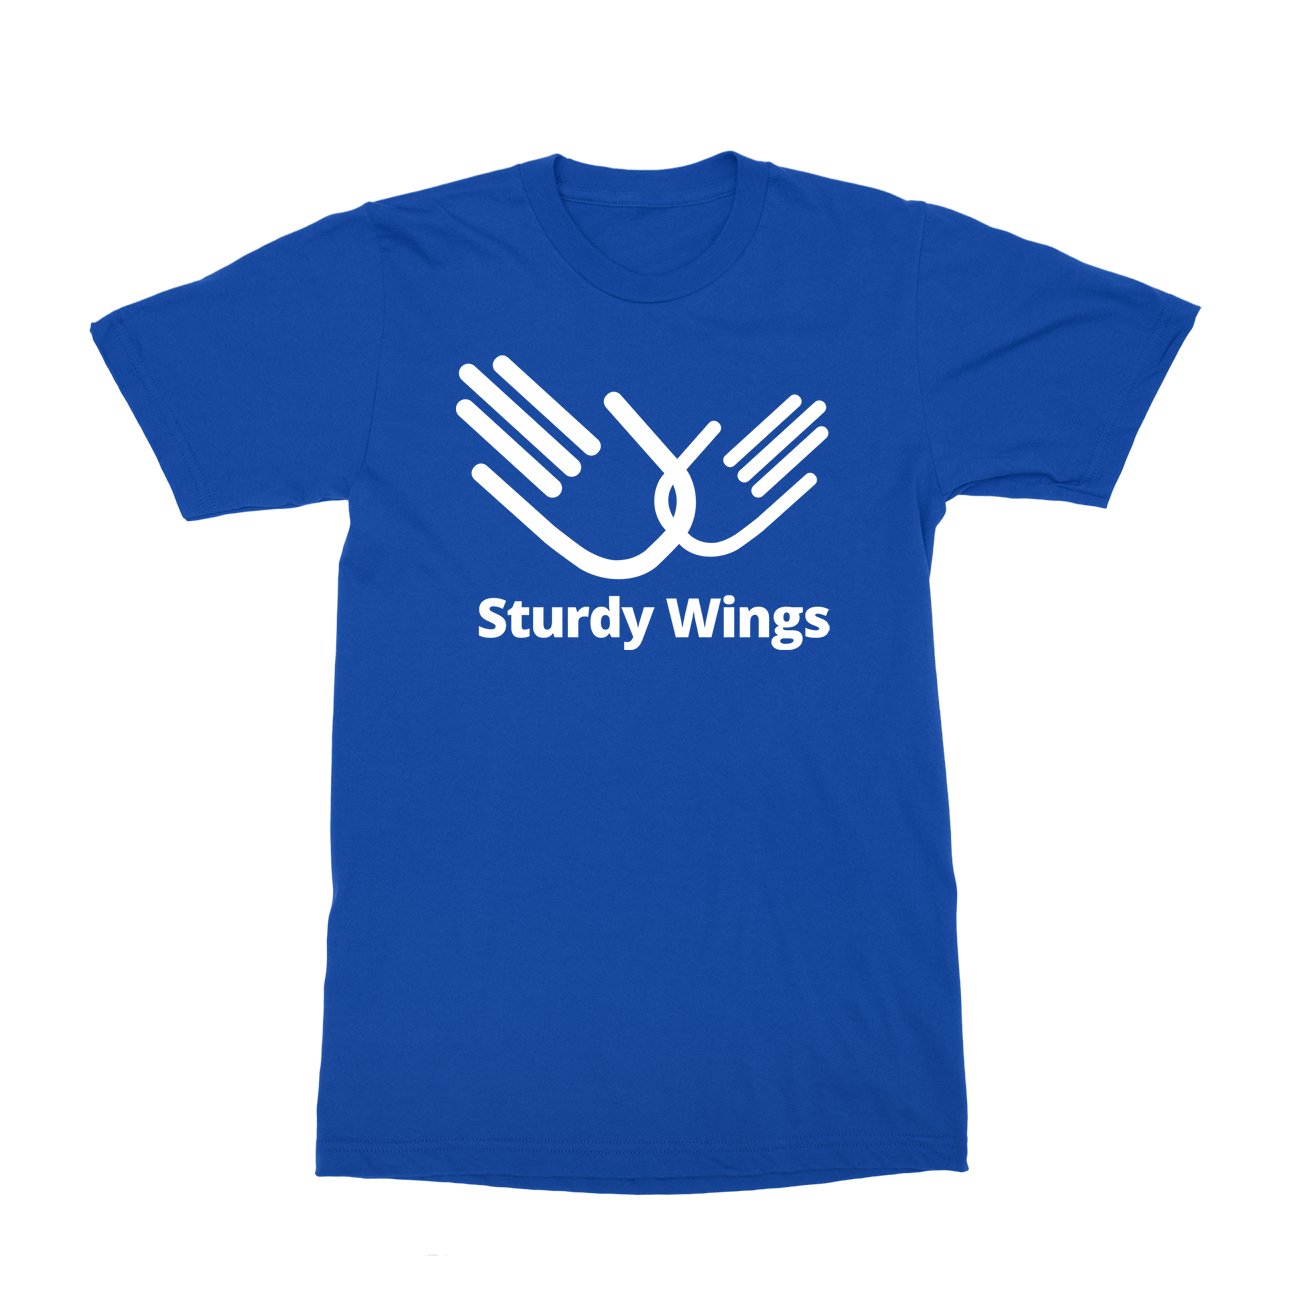 Sturdy Wings T-Shirt - Black Cat MFG -